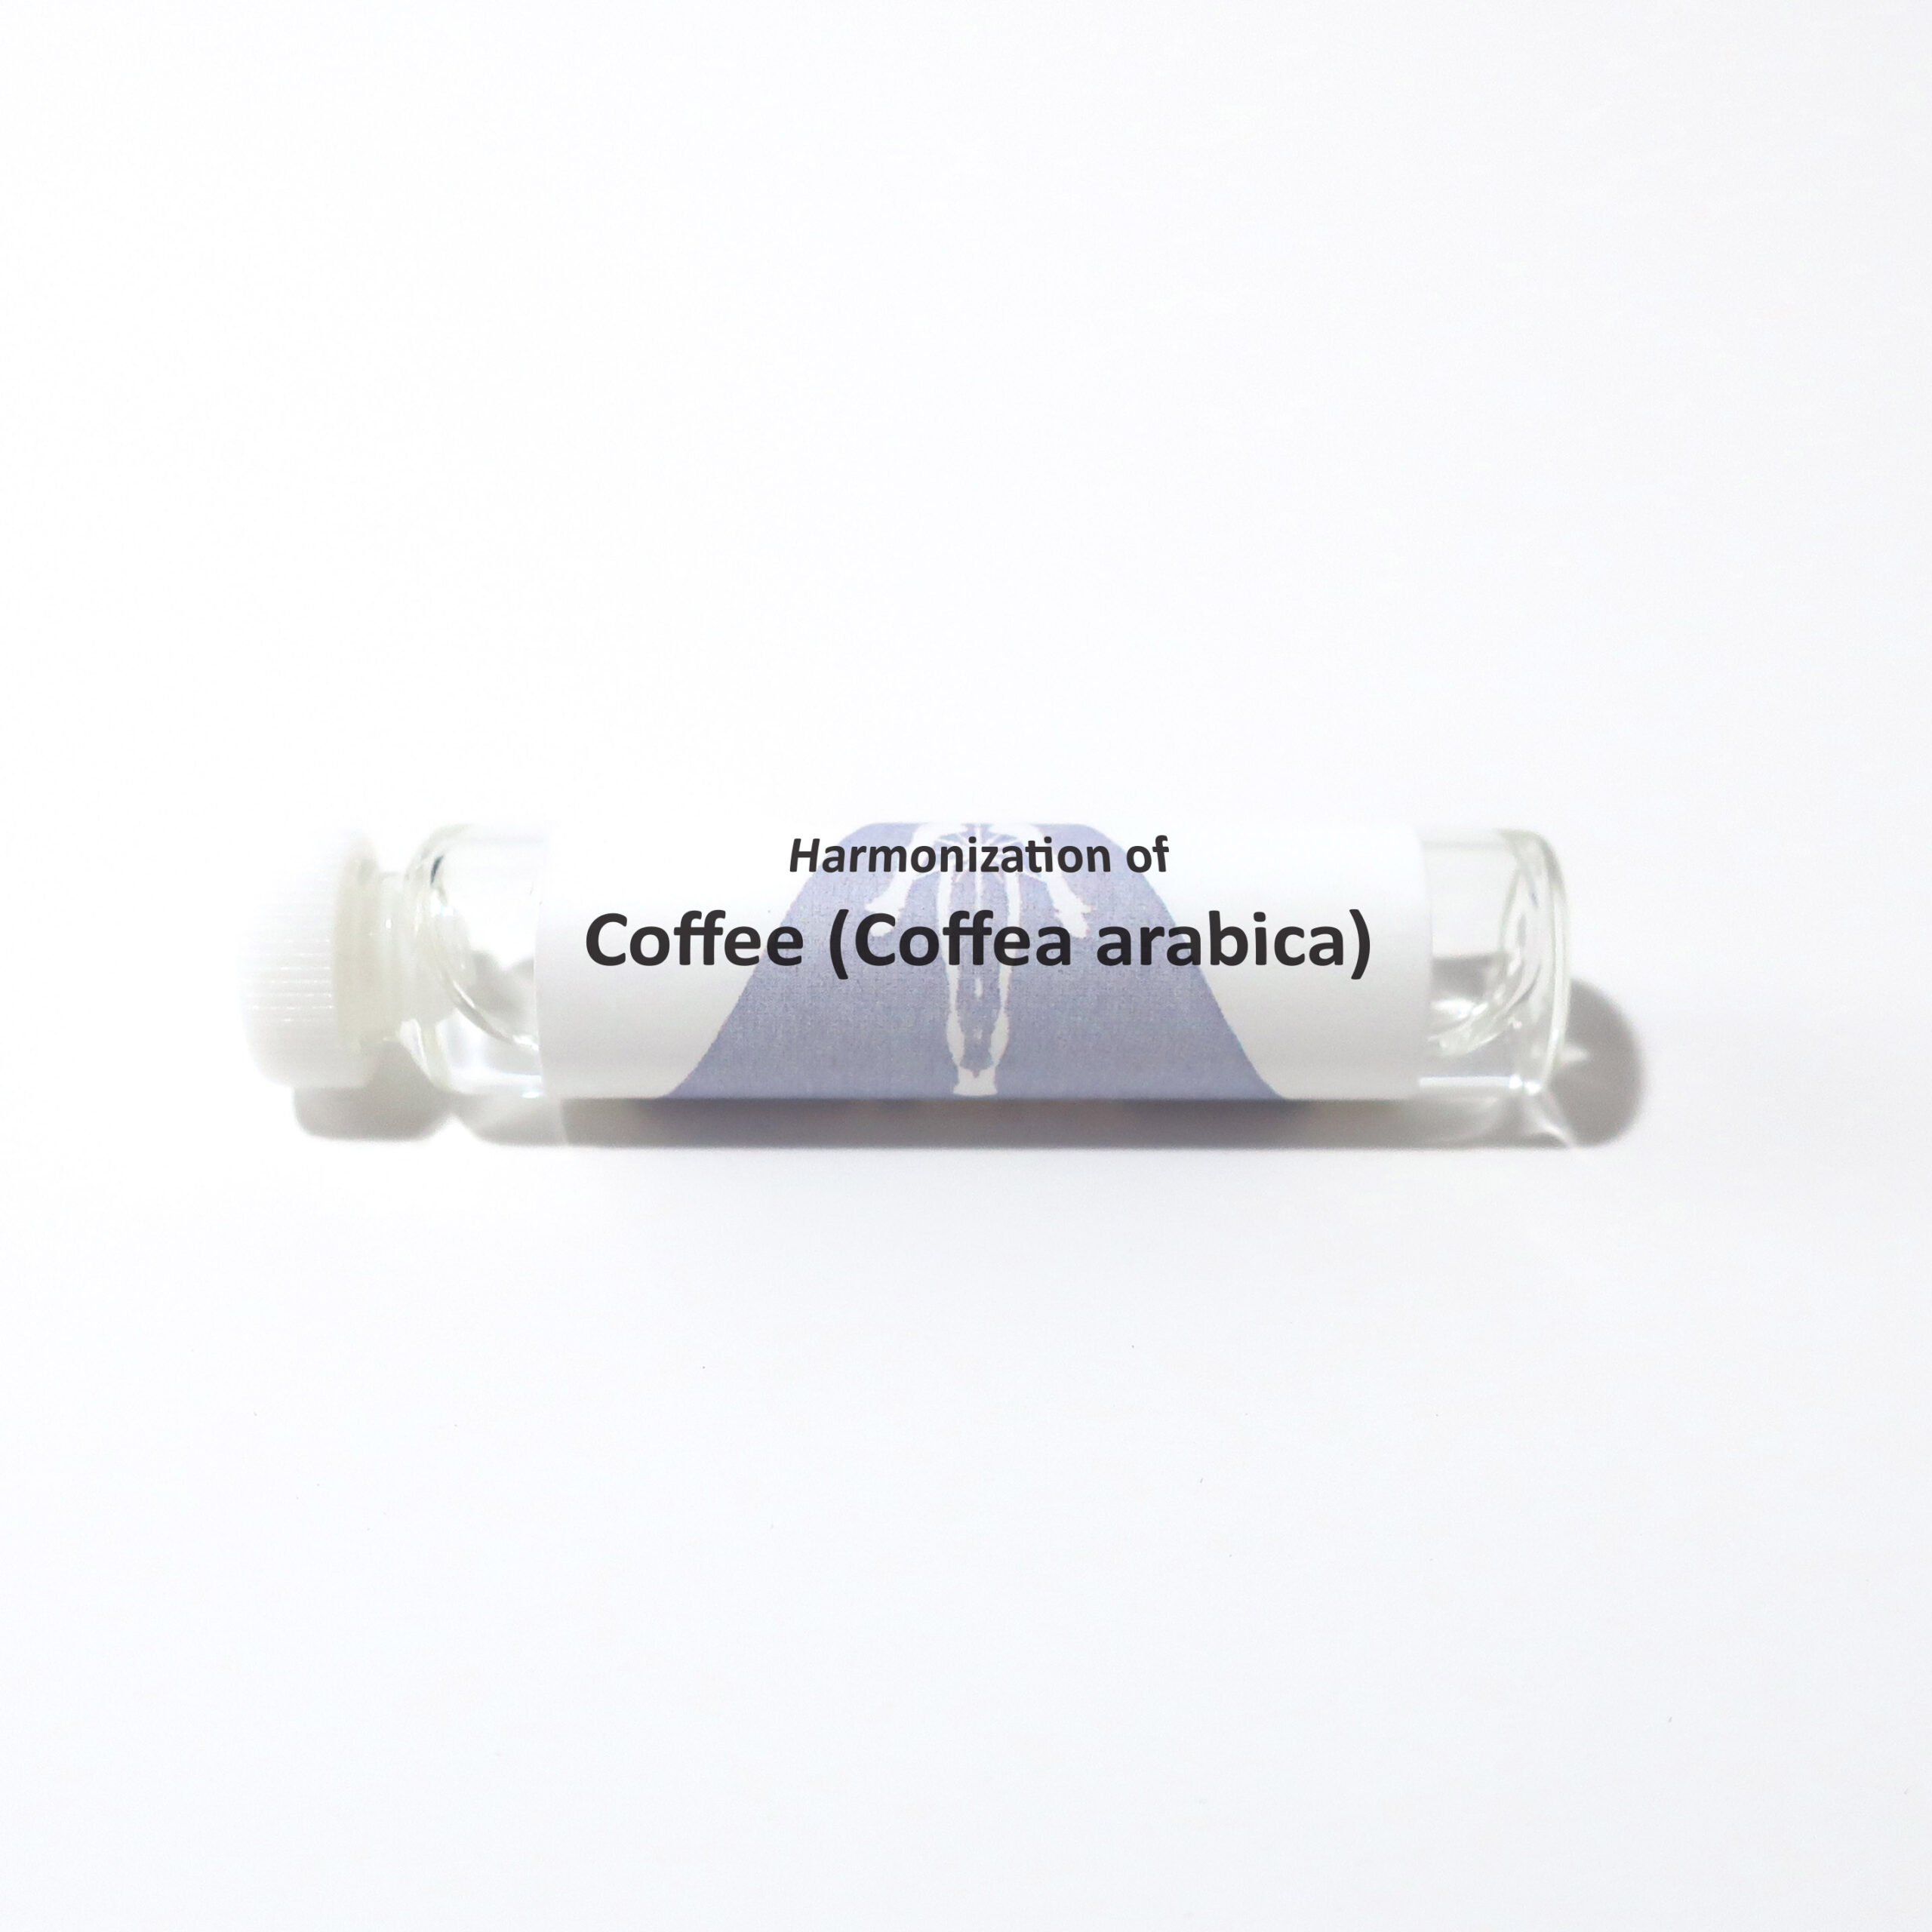 Coffee (Coffea arabica)